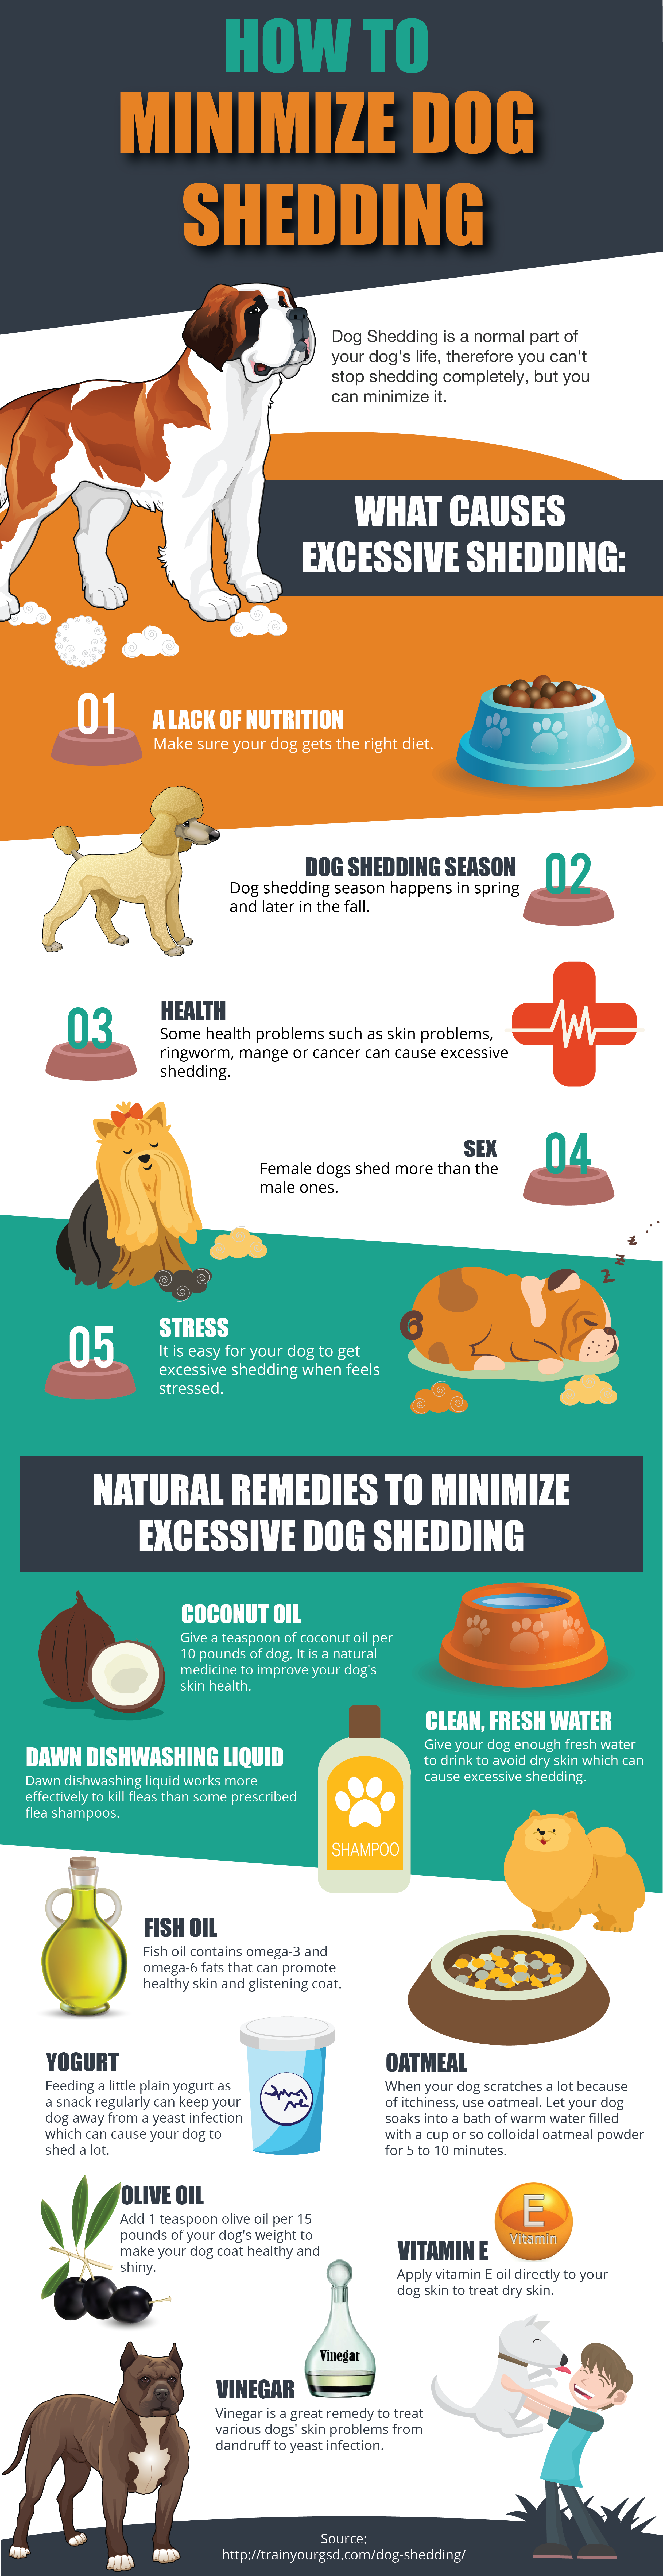 reduce dog shedding